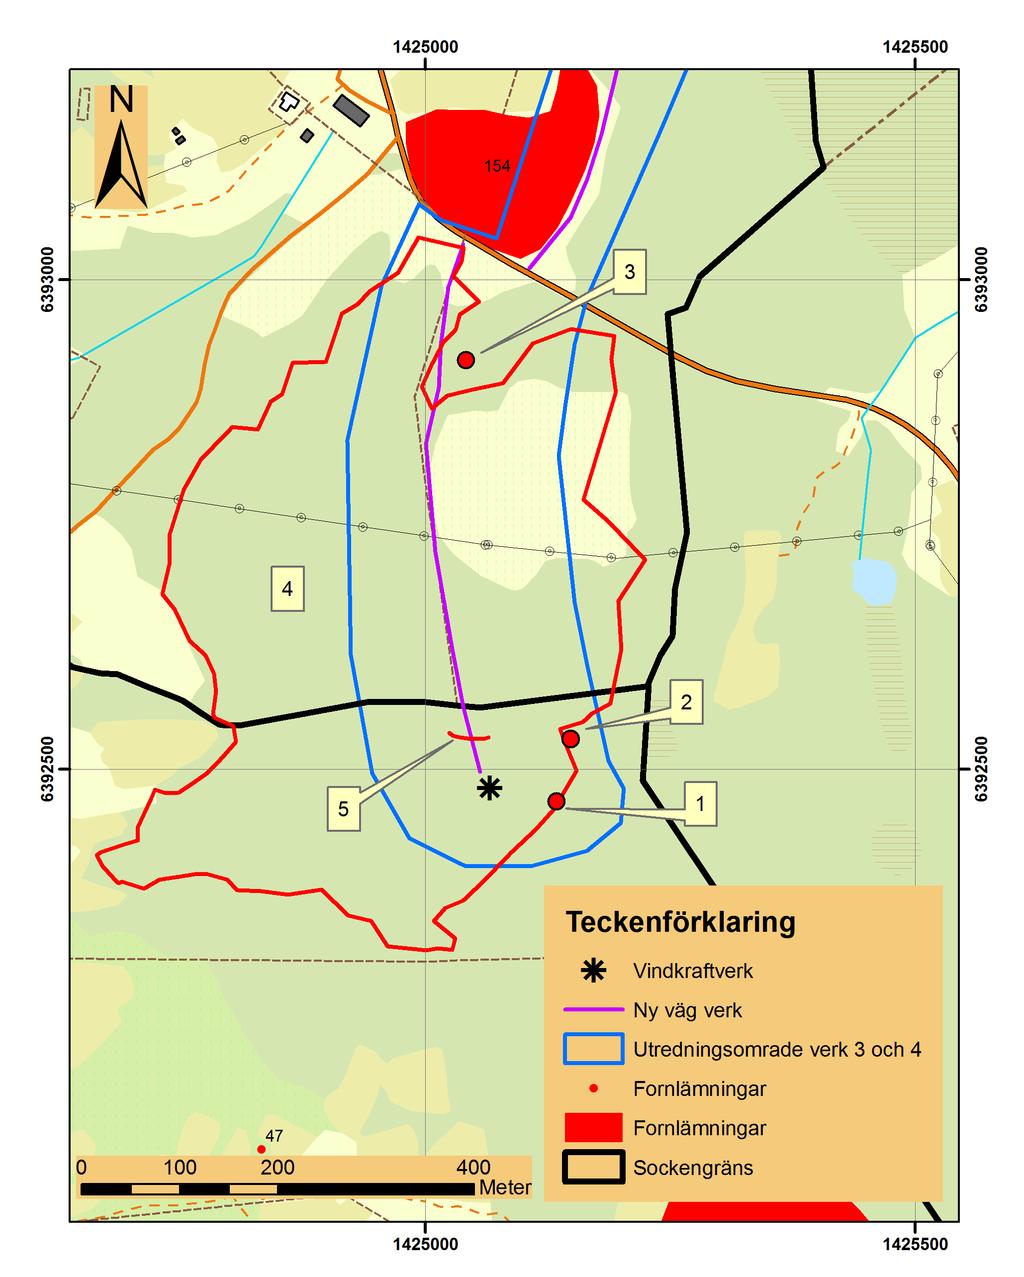 8 ARKEOLOGISK RAPPORT 2009:15 figur 2. Södra delen av utredningsområdet, markerat med blått.